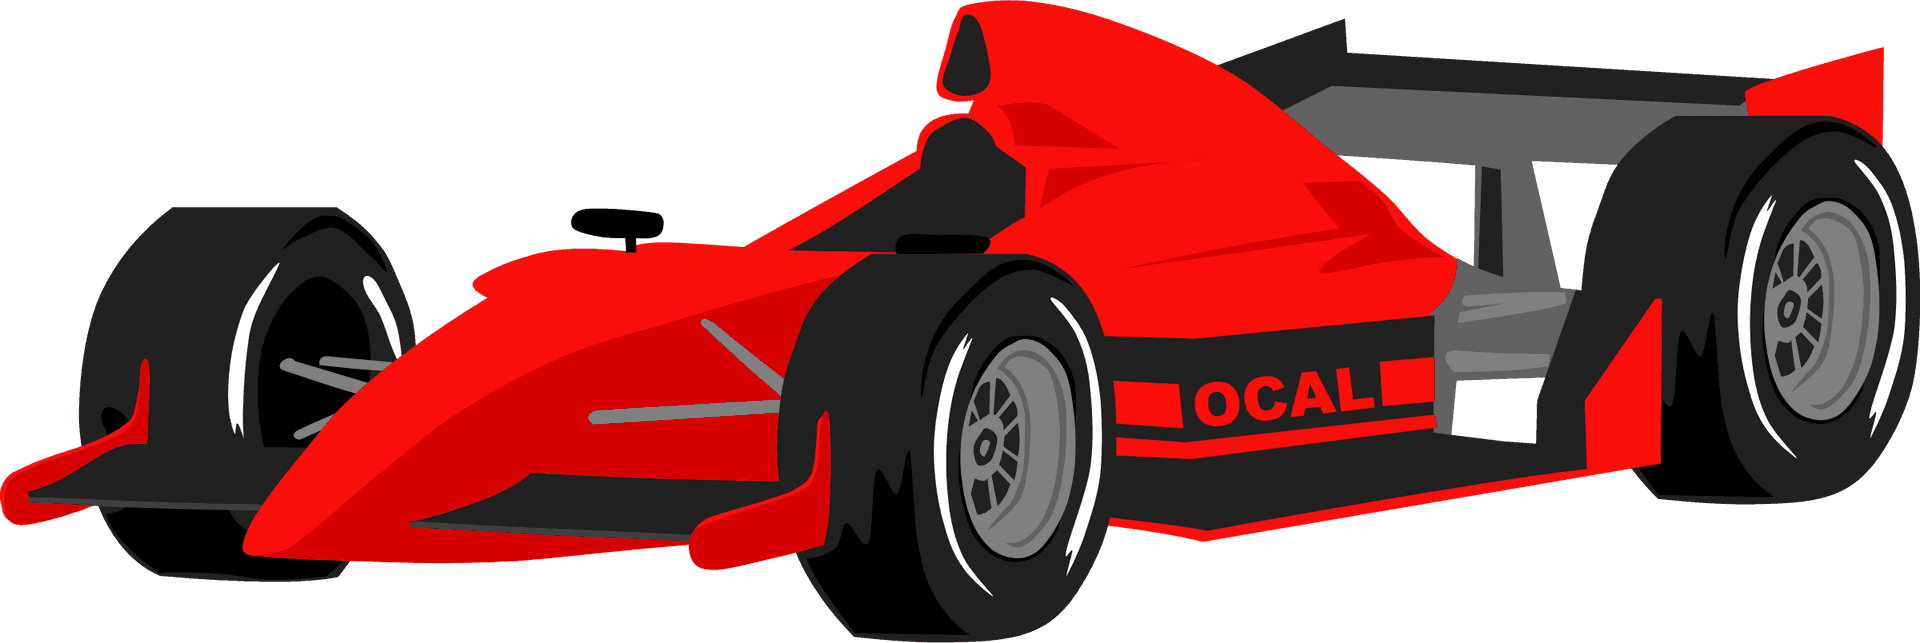 Red Formula Race Car Illustration PNG image